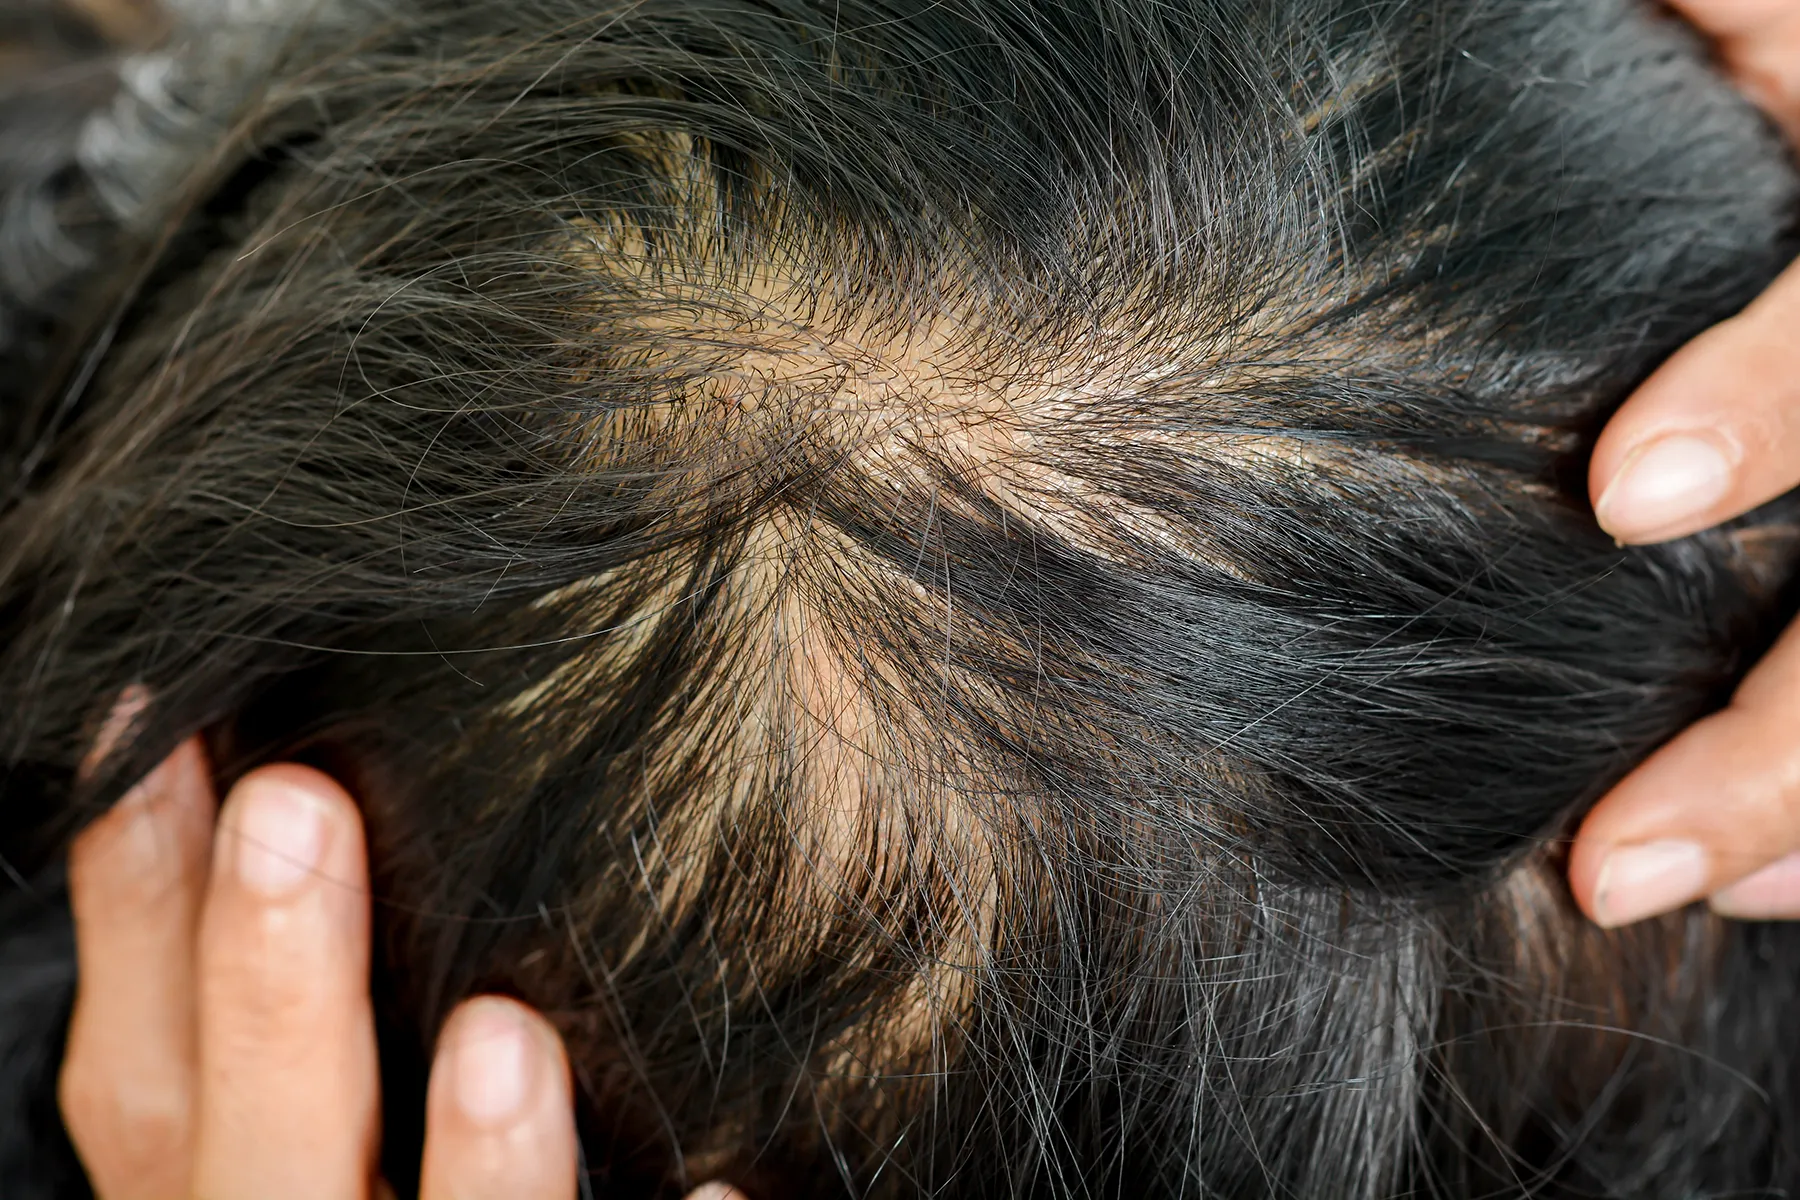 Bald Truth: Mouse Study May Get at Roots of Hair Loss thumbnail